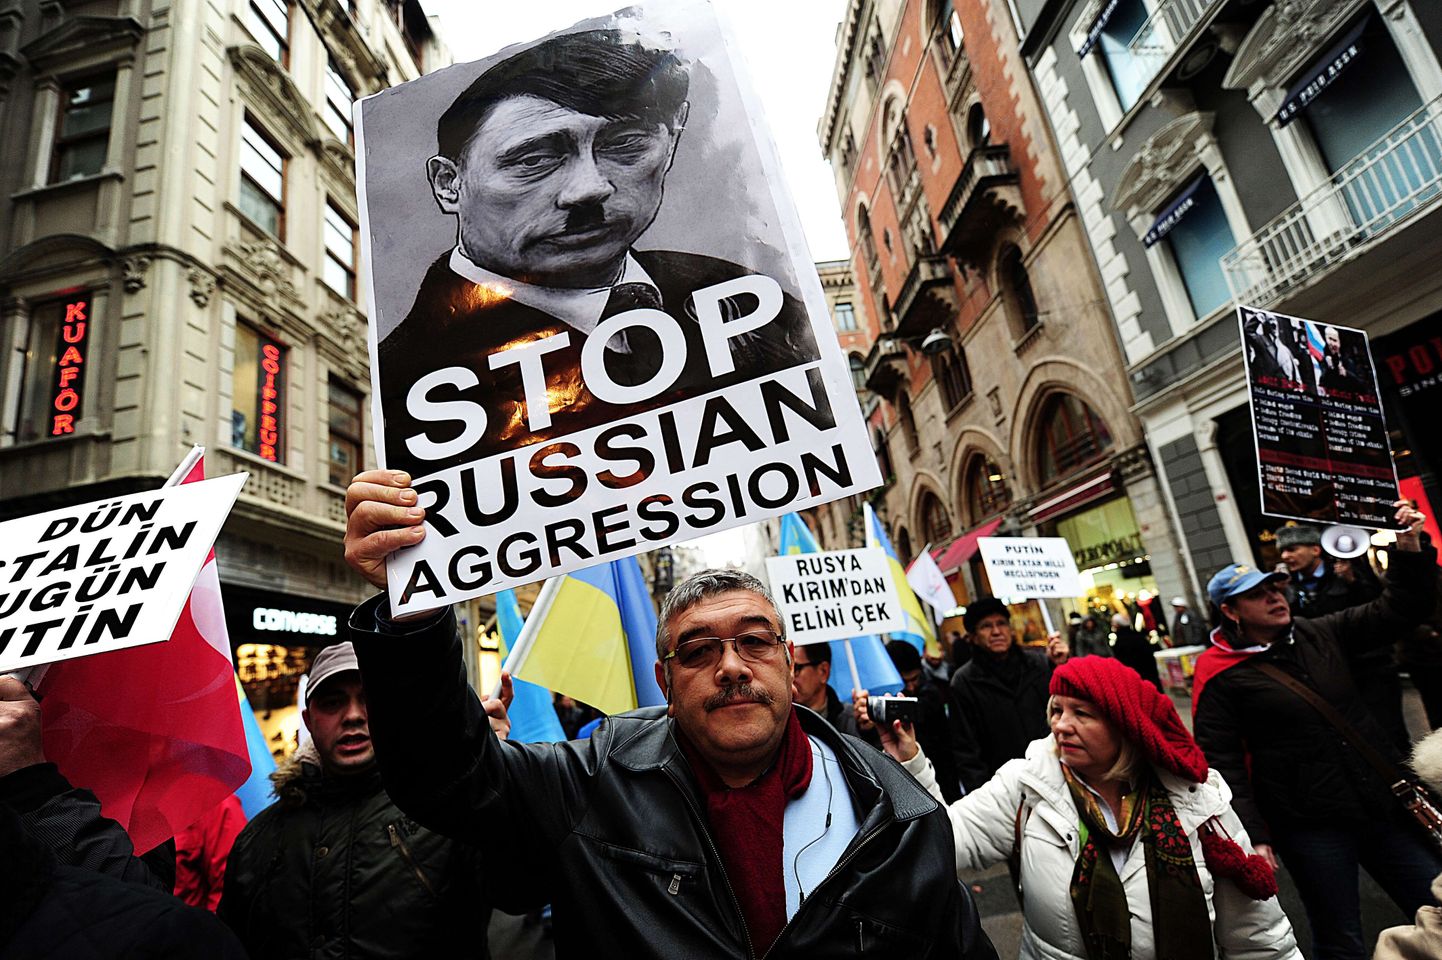 Istanbuli tänavatele kogunenud protestijad võrldesid Putinit Hitleriga.